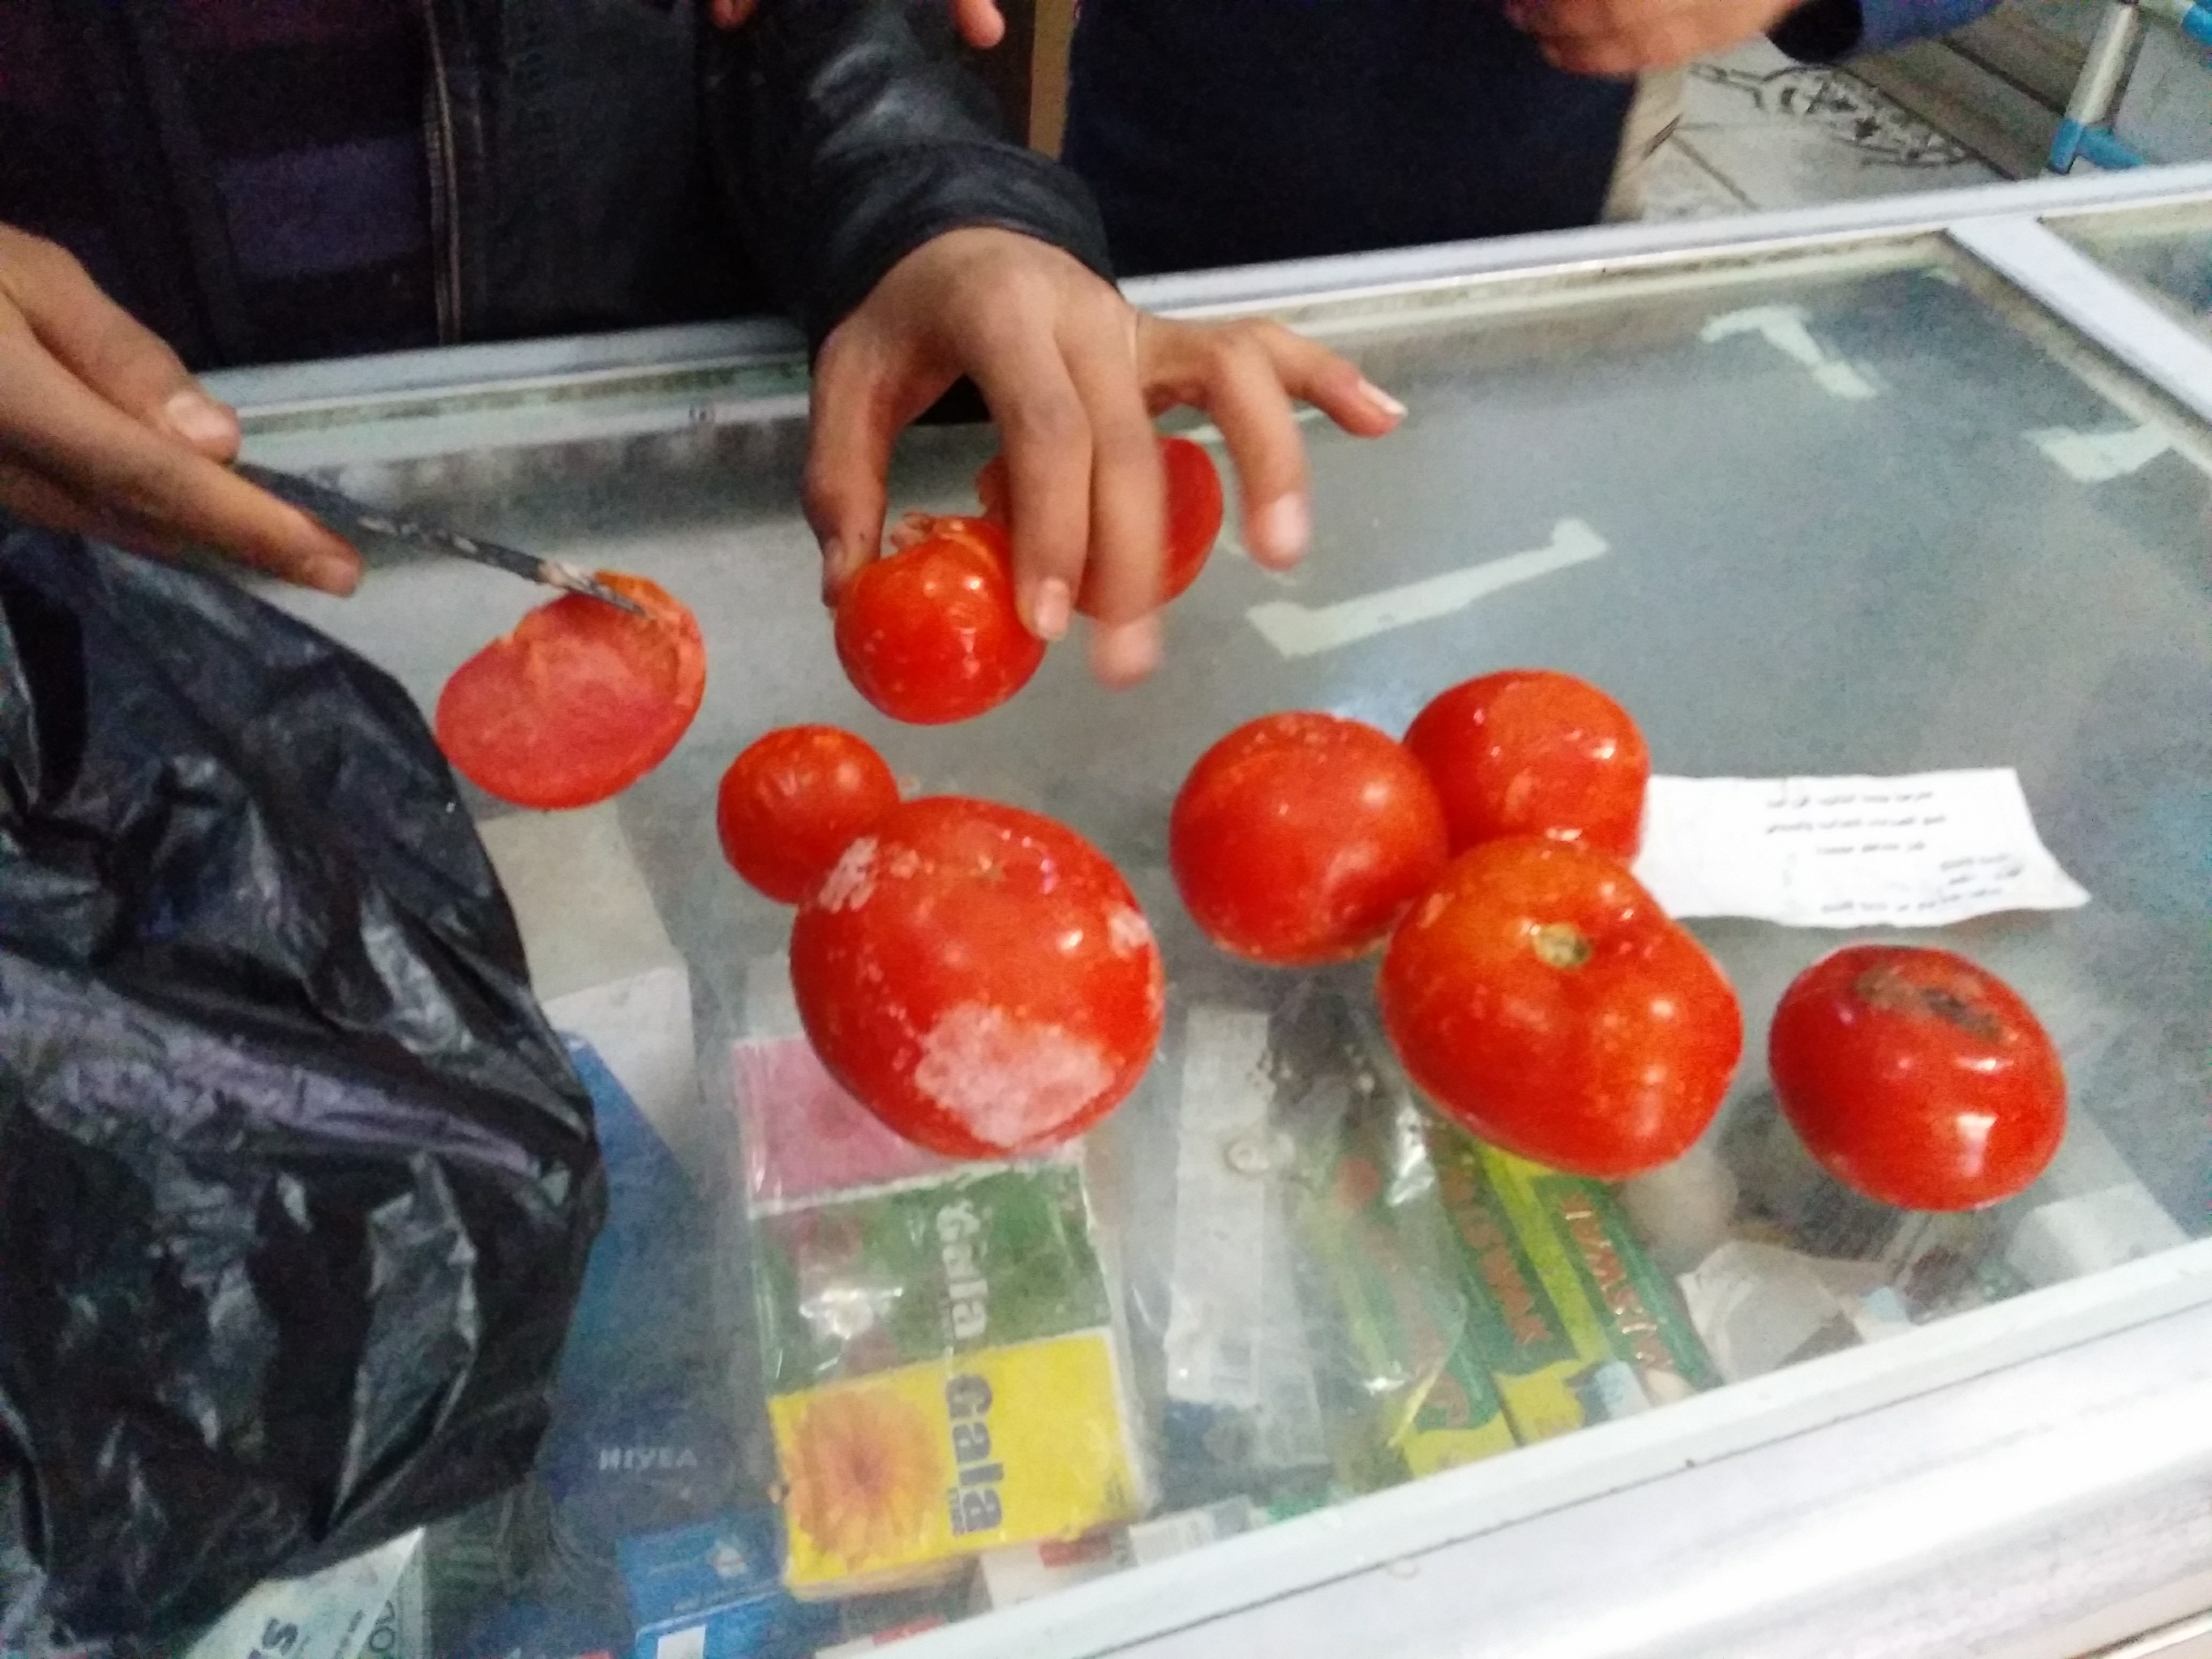 الطماطم المجمدة التى تم بيعها للطلاب